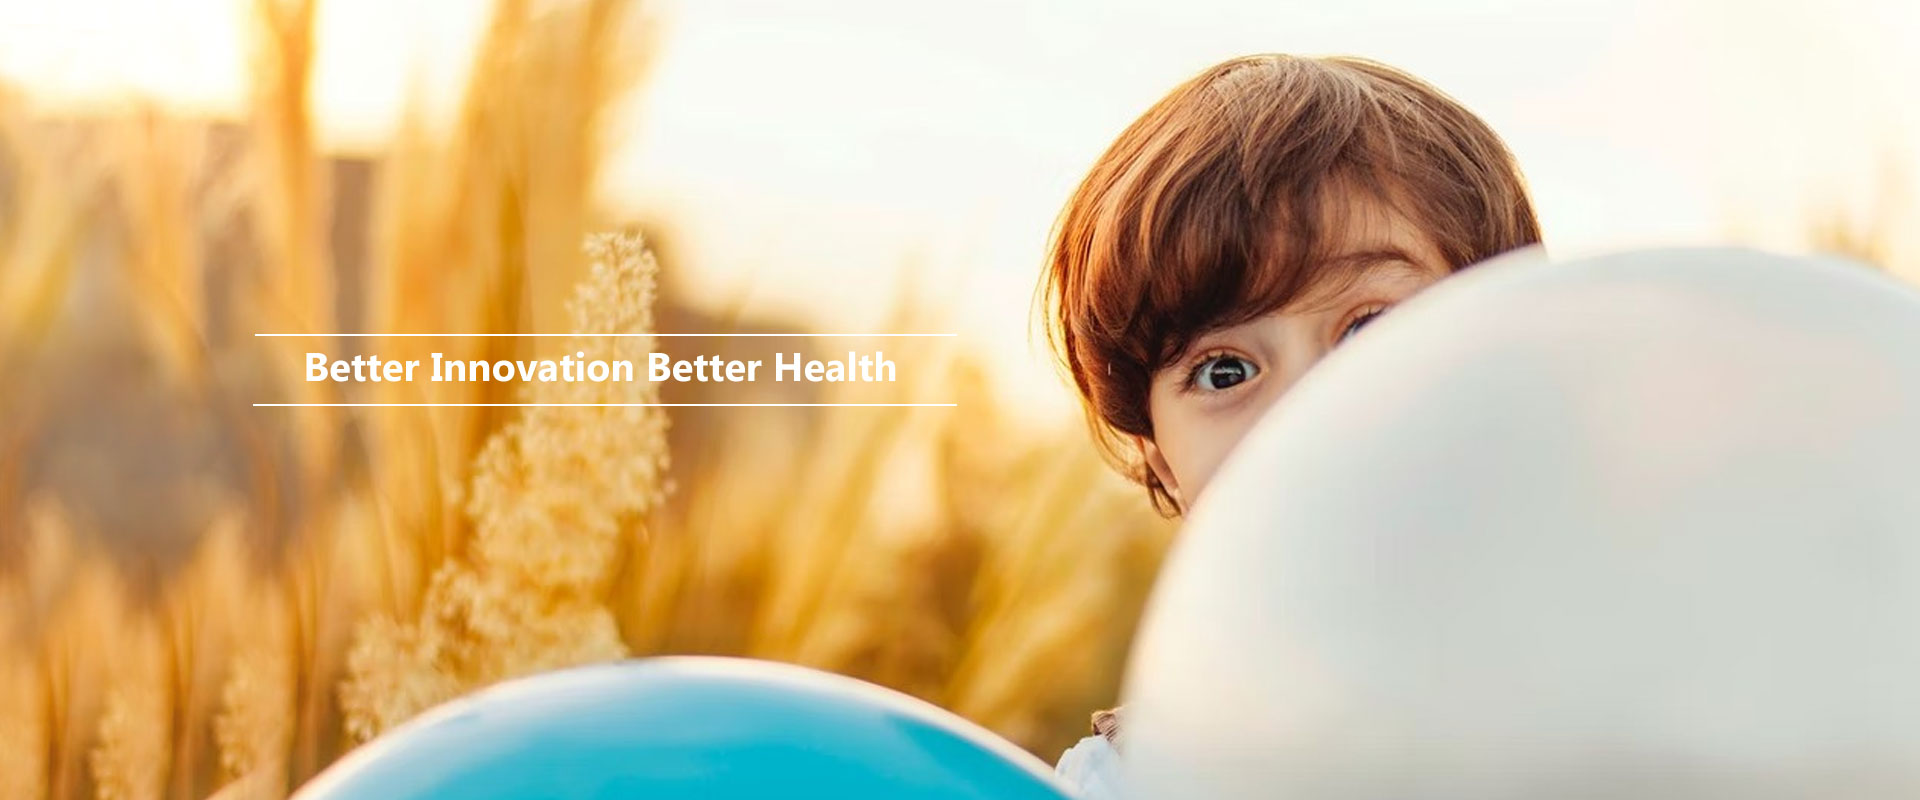 Better Innovation Better Health